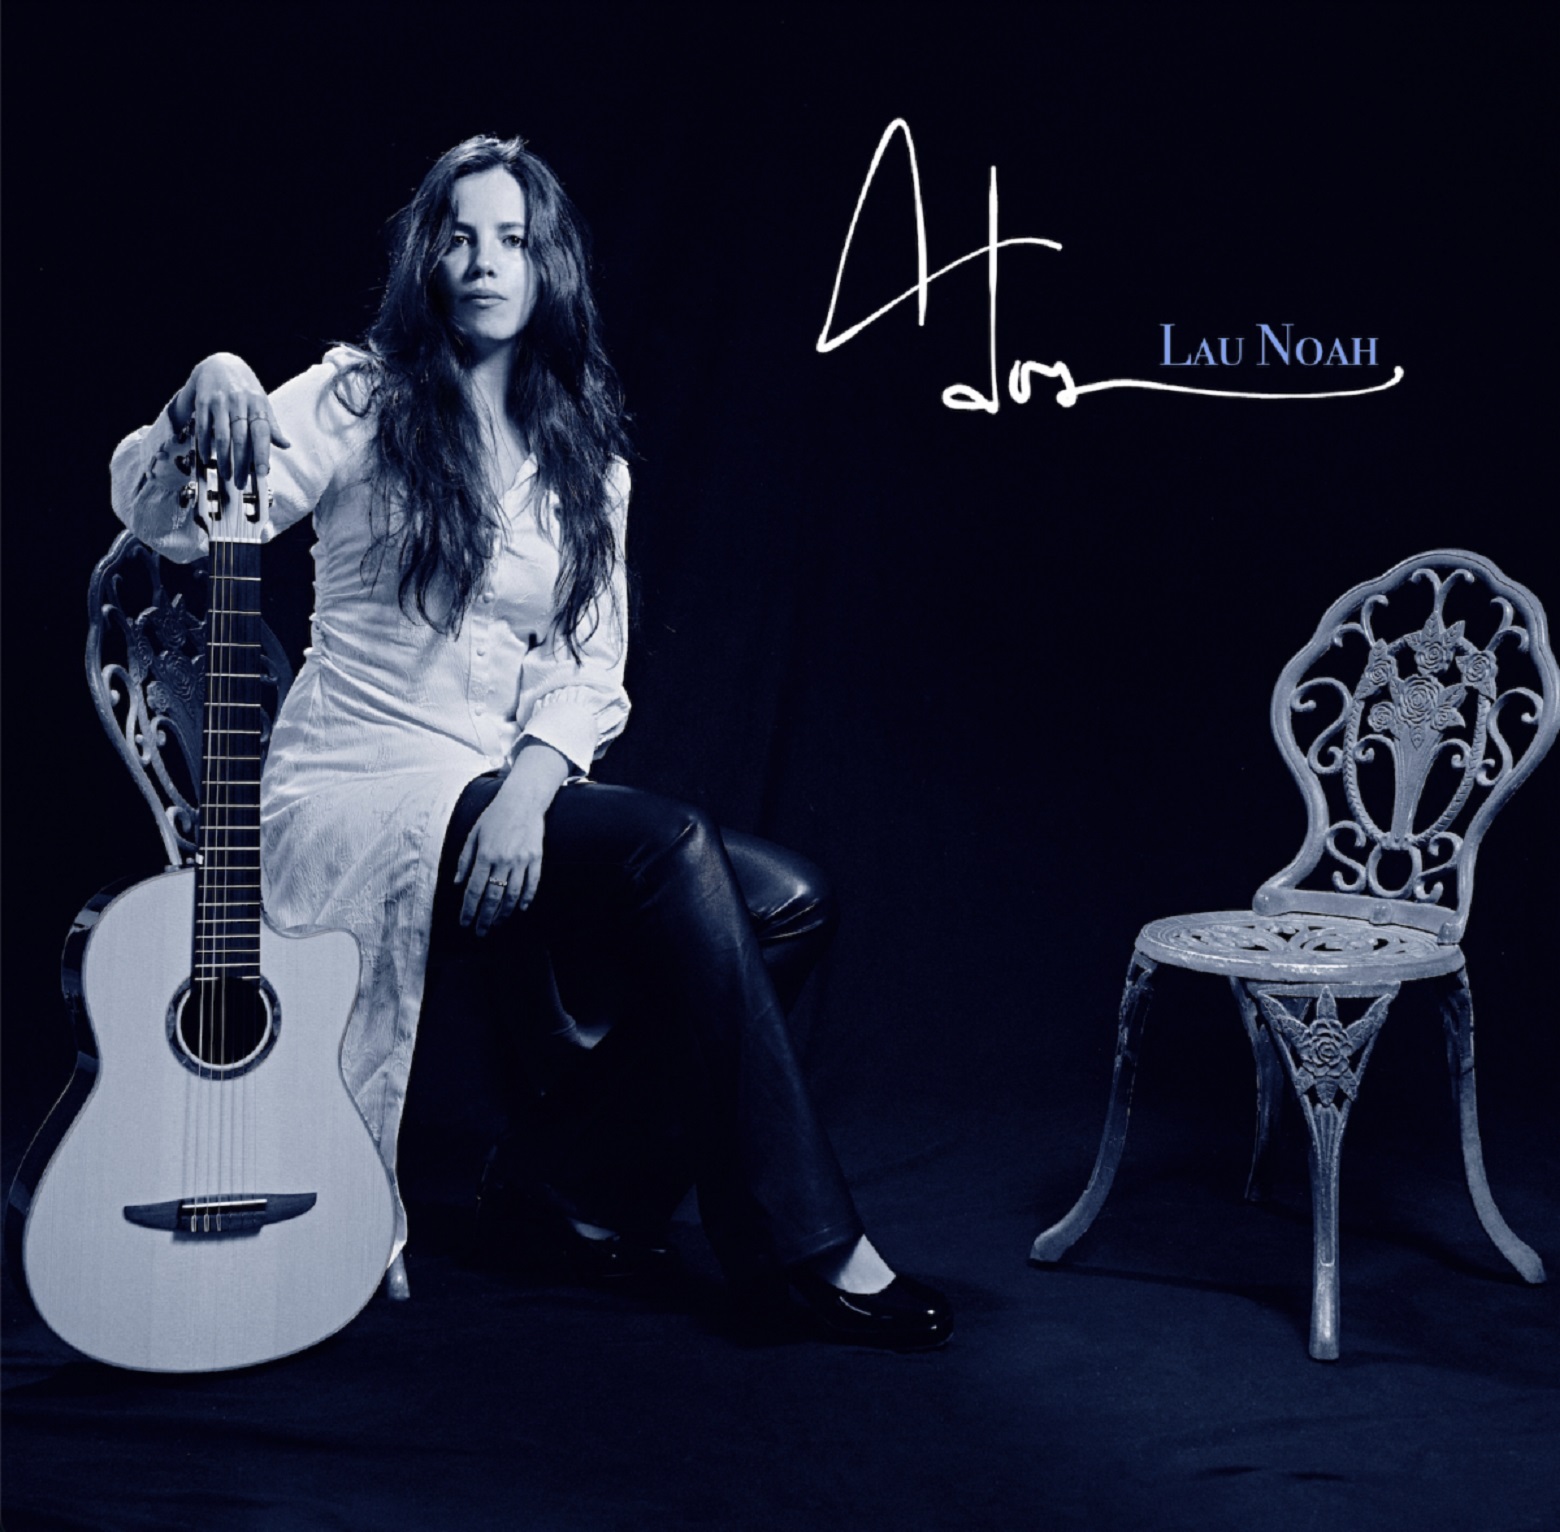 Lau Noah Announces New Album ‘A DOS’ With Single feat. Chris Thile